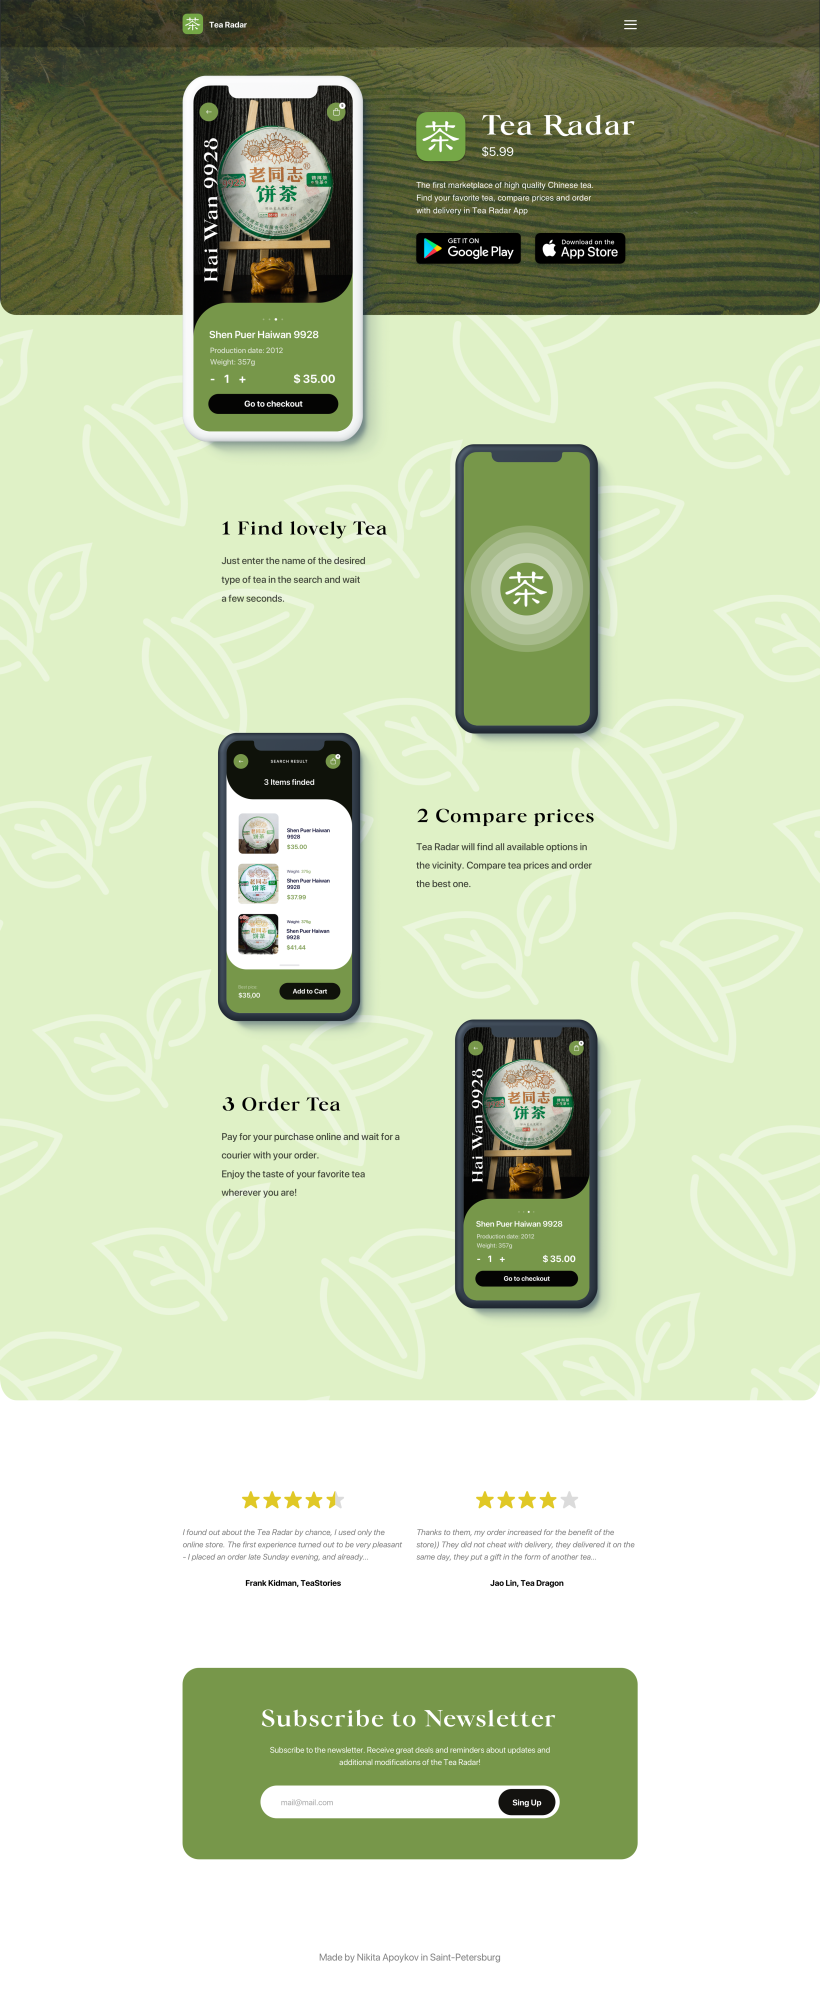 Tea Radar Mobile App & Promo Page (Desktop)